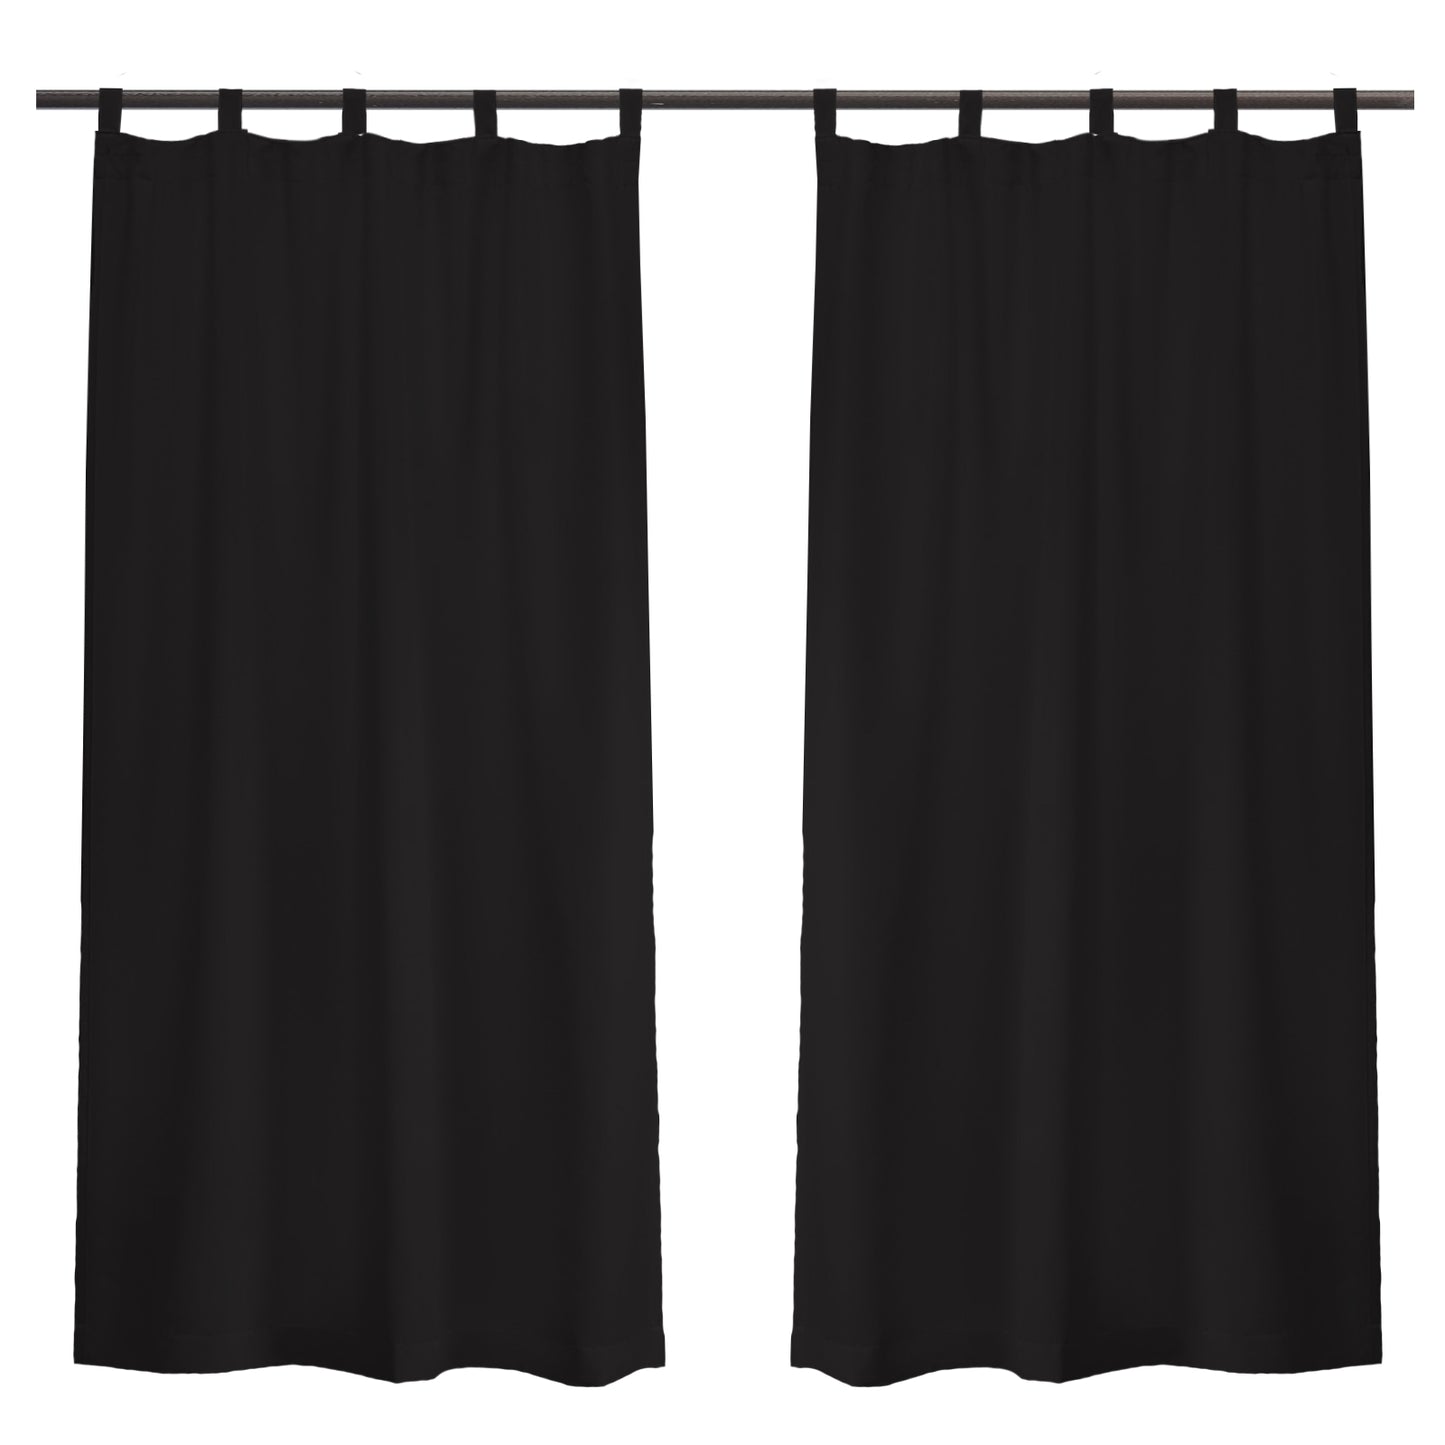 Patio Waterproof Blackout Outdoor Curtains, 1 Panel, Black, 132x213cm/132x241cm/132x274cm